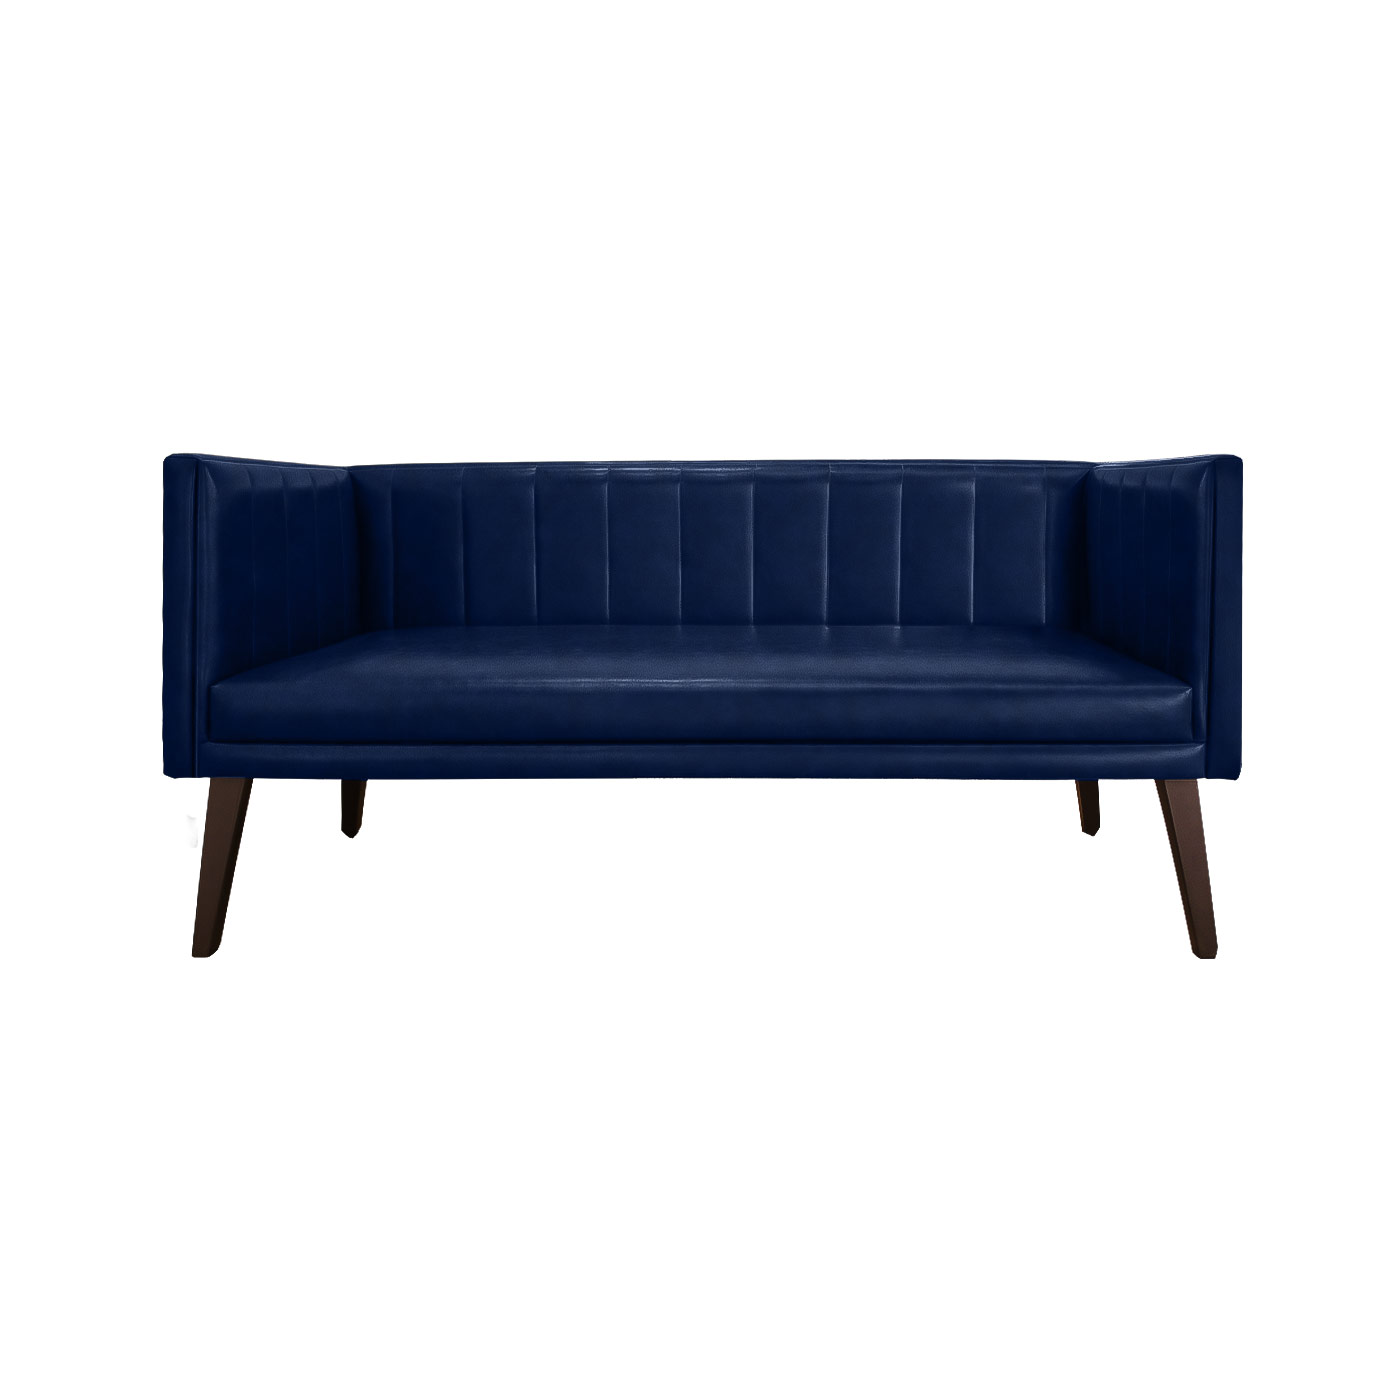 Melrose Textured Dark Blue Dark Double Sofa